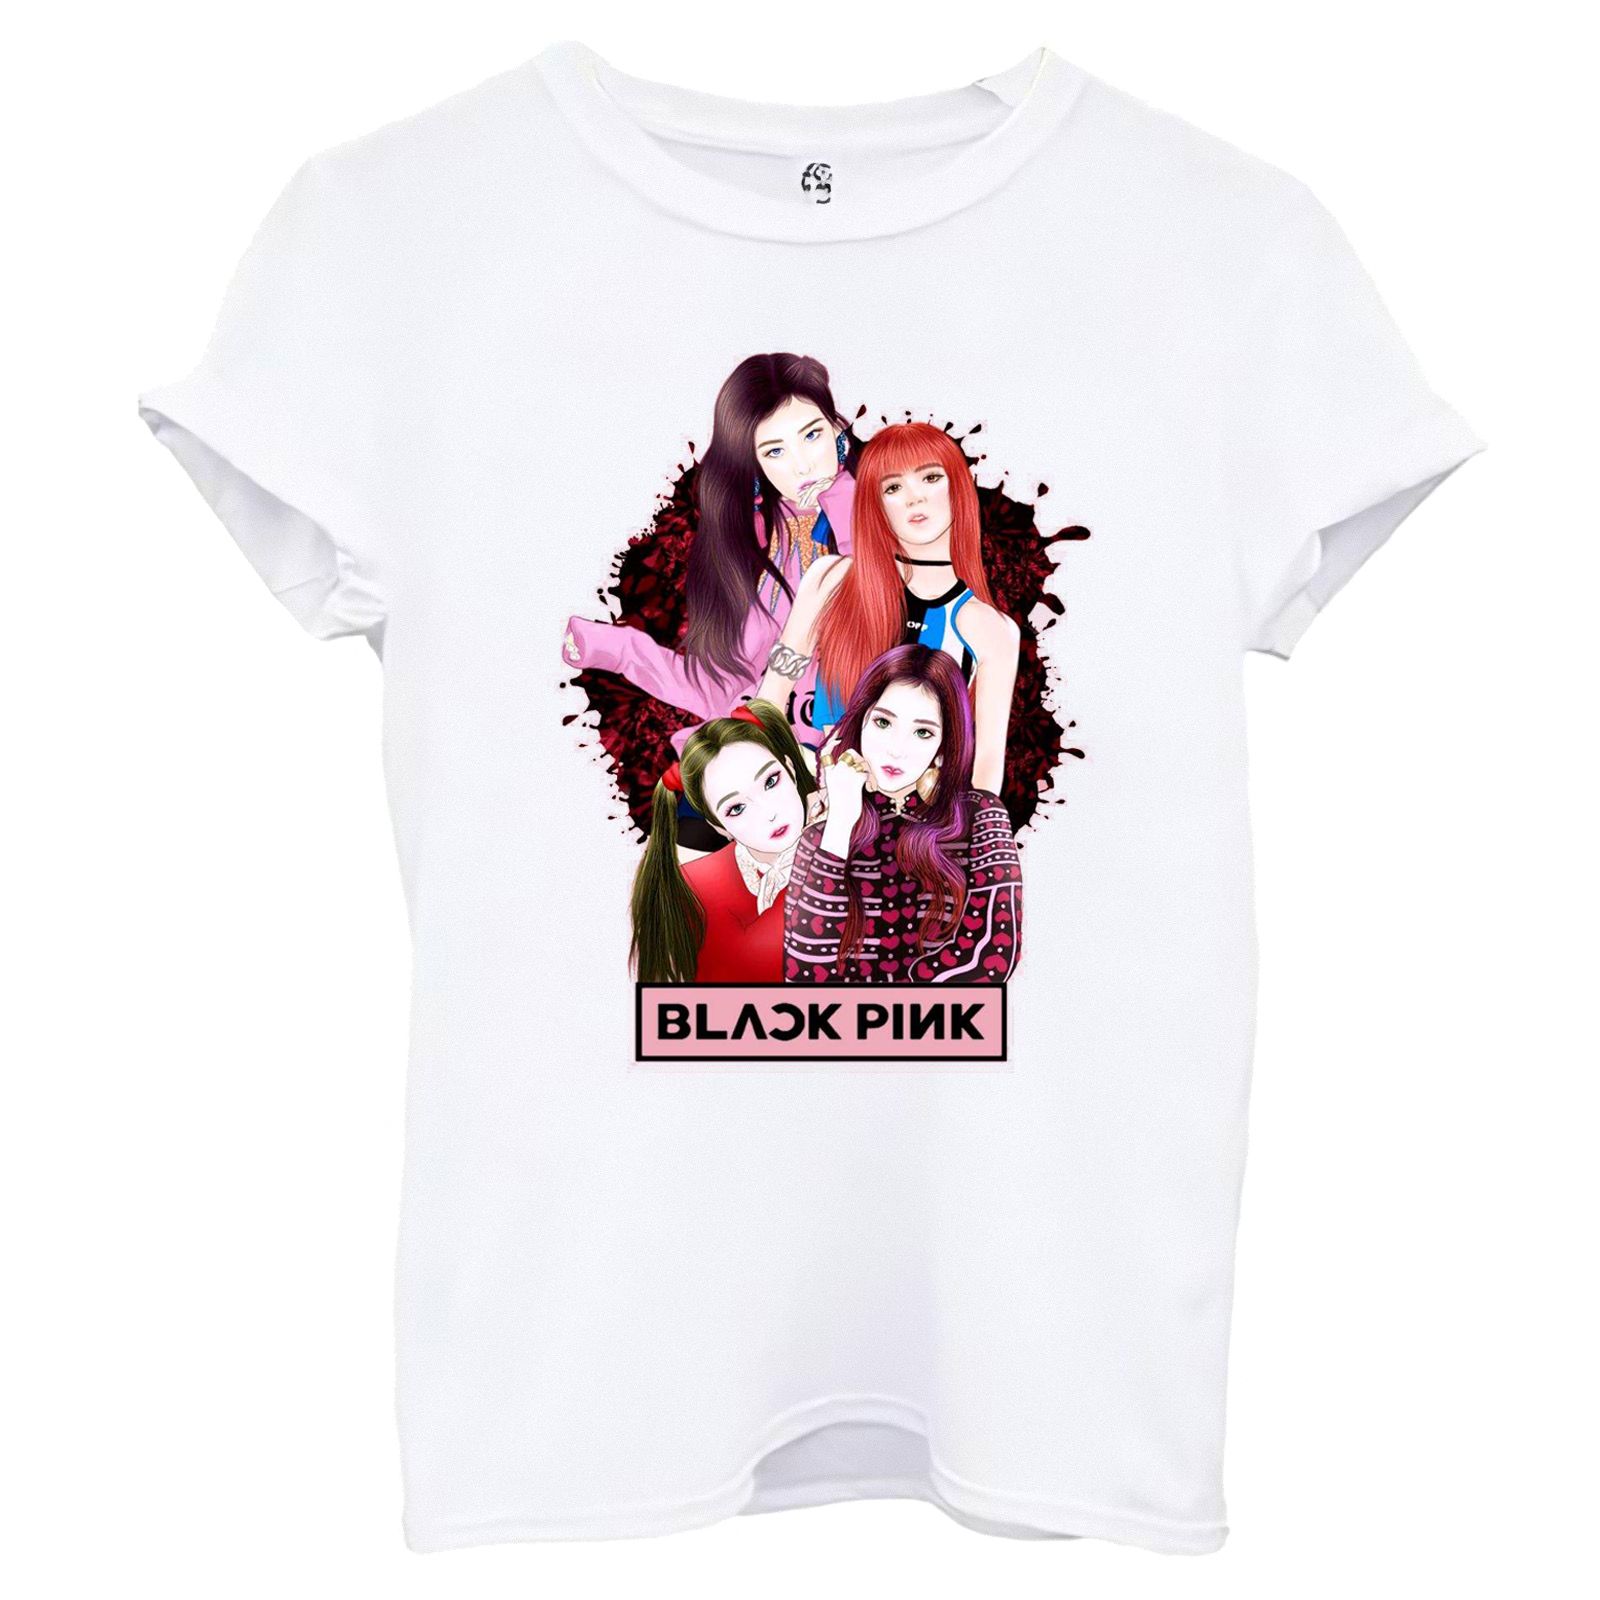 تی شرت آستین کوتاه زنانه اسد طرح BLACK PINK کد 92 -  - 1